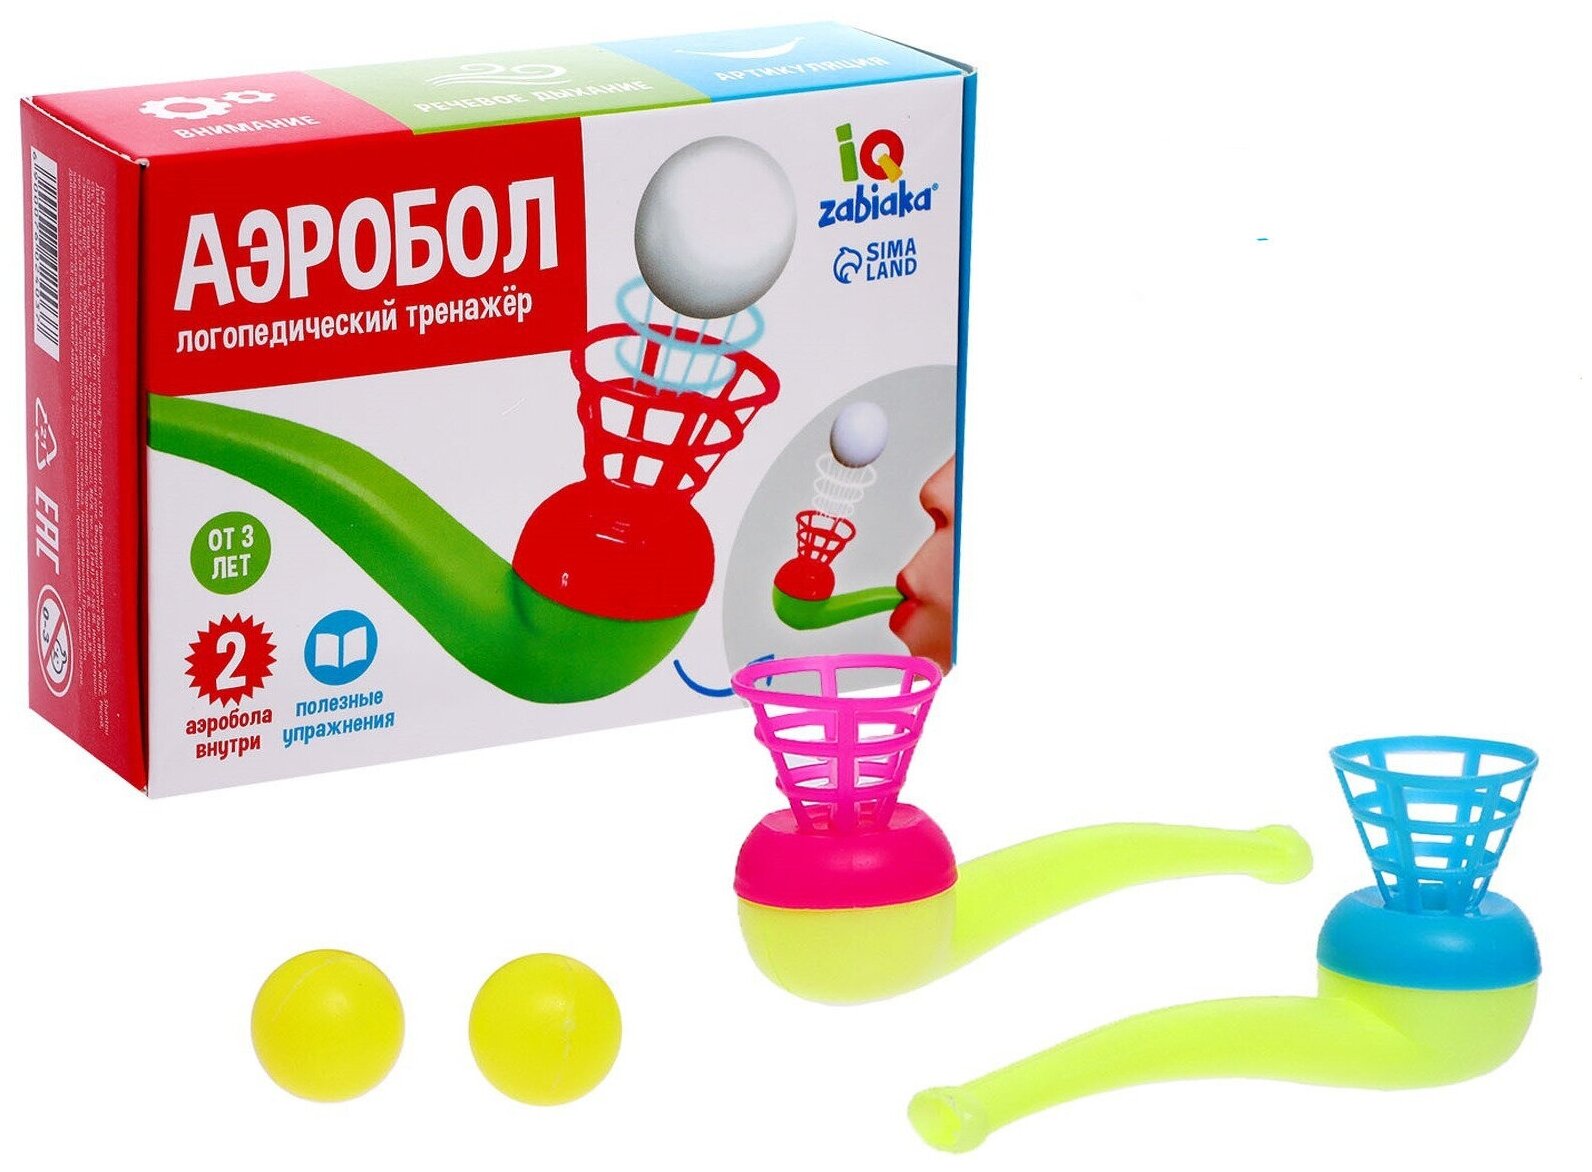 Логопедическая игра-тренажер "Аэробол" для развития речевого дыхания у детей с парящим шариком, 2 шт